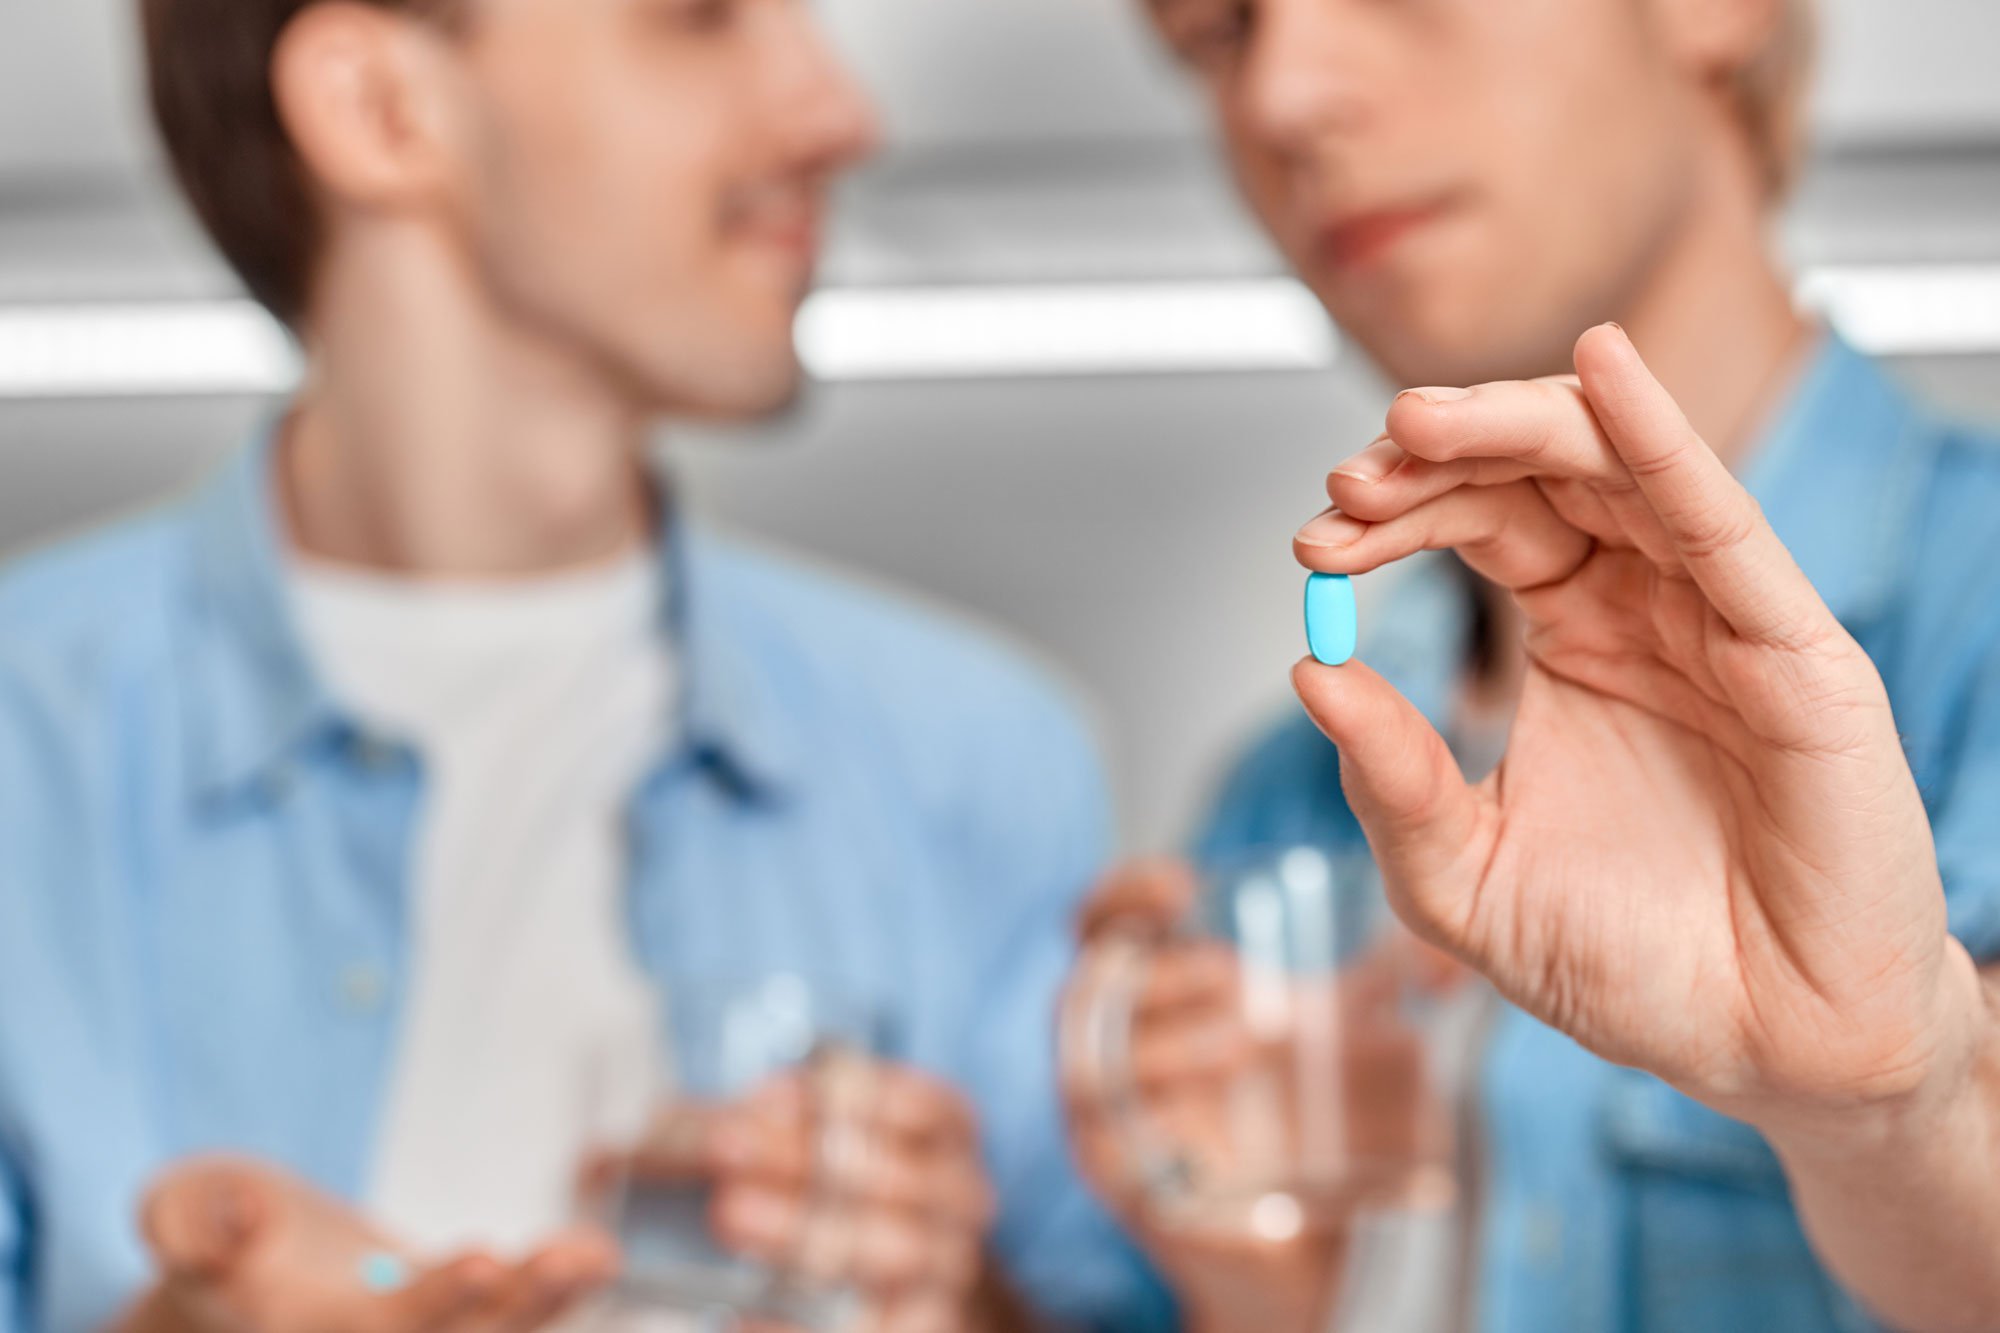 Two men holding prEP pills